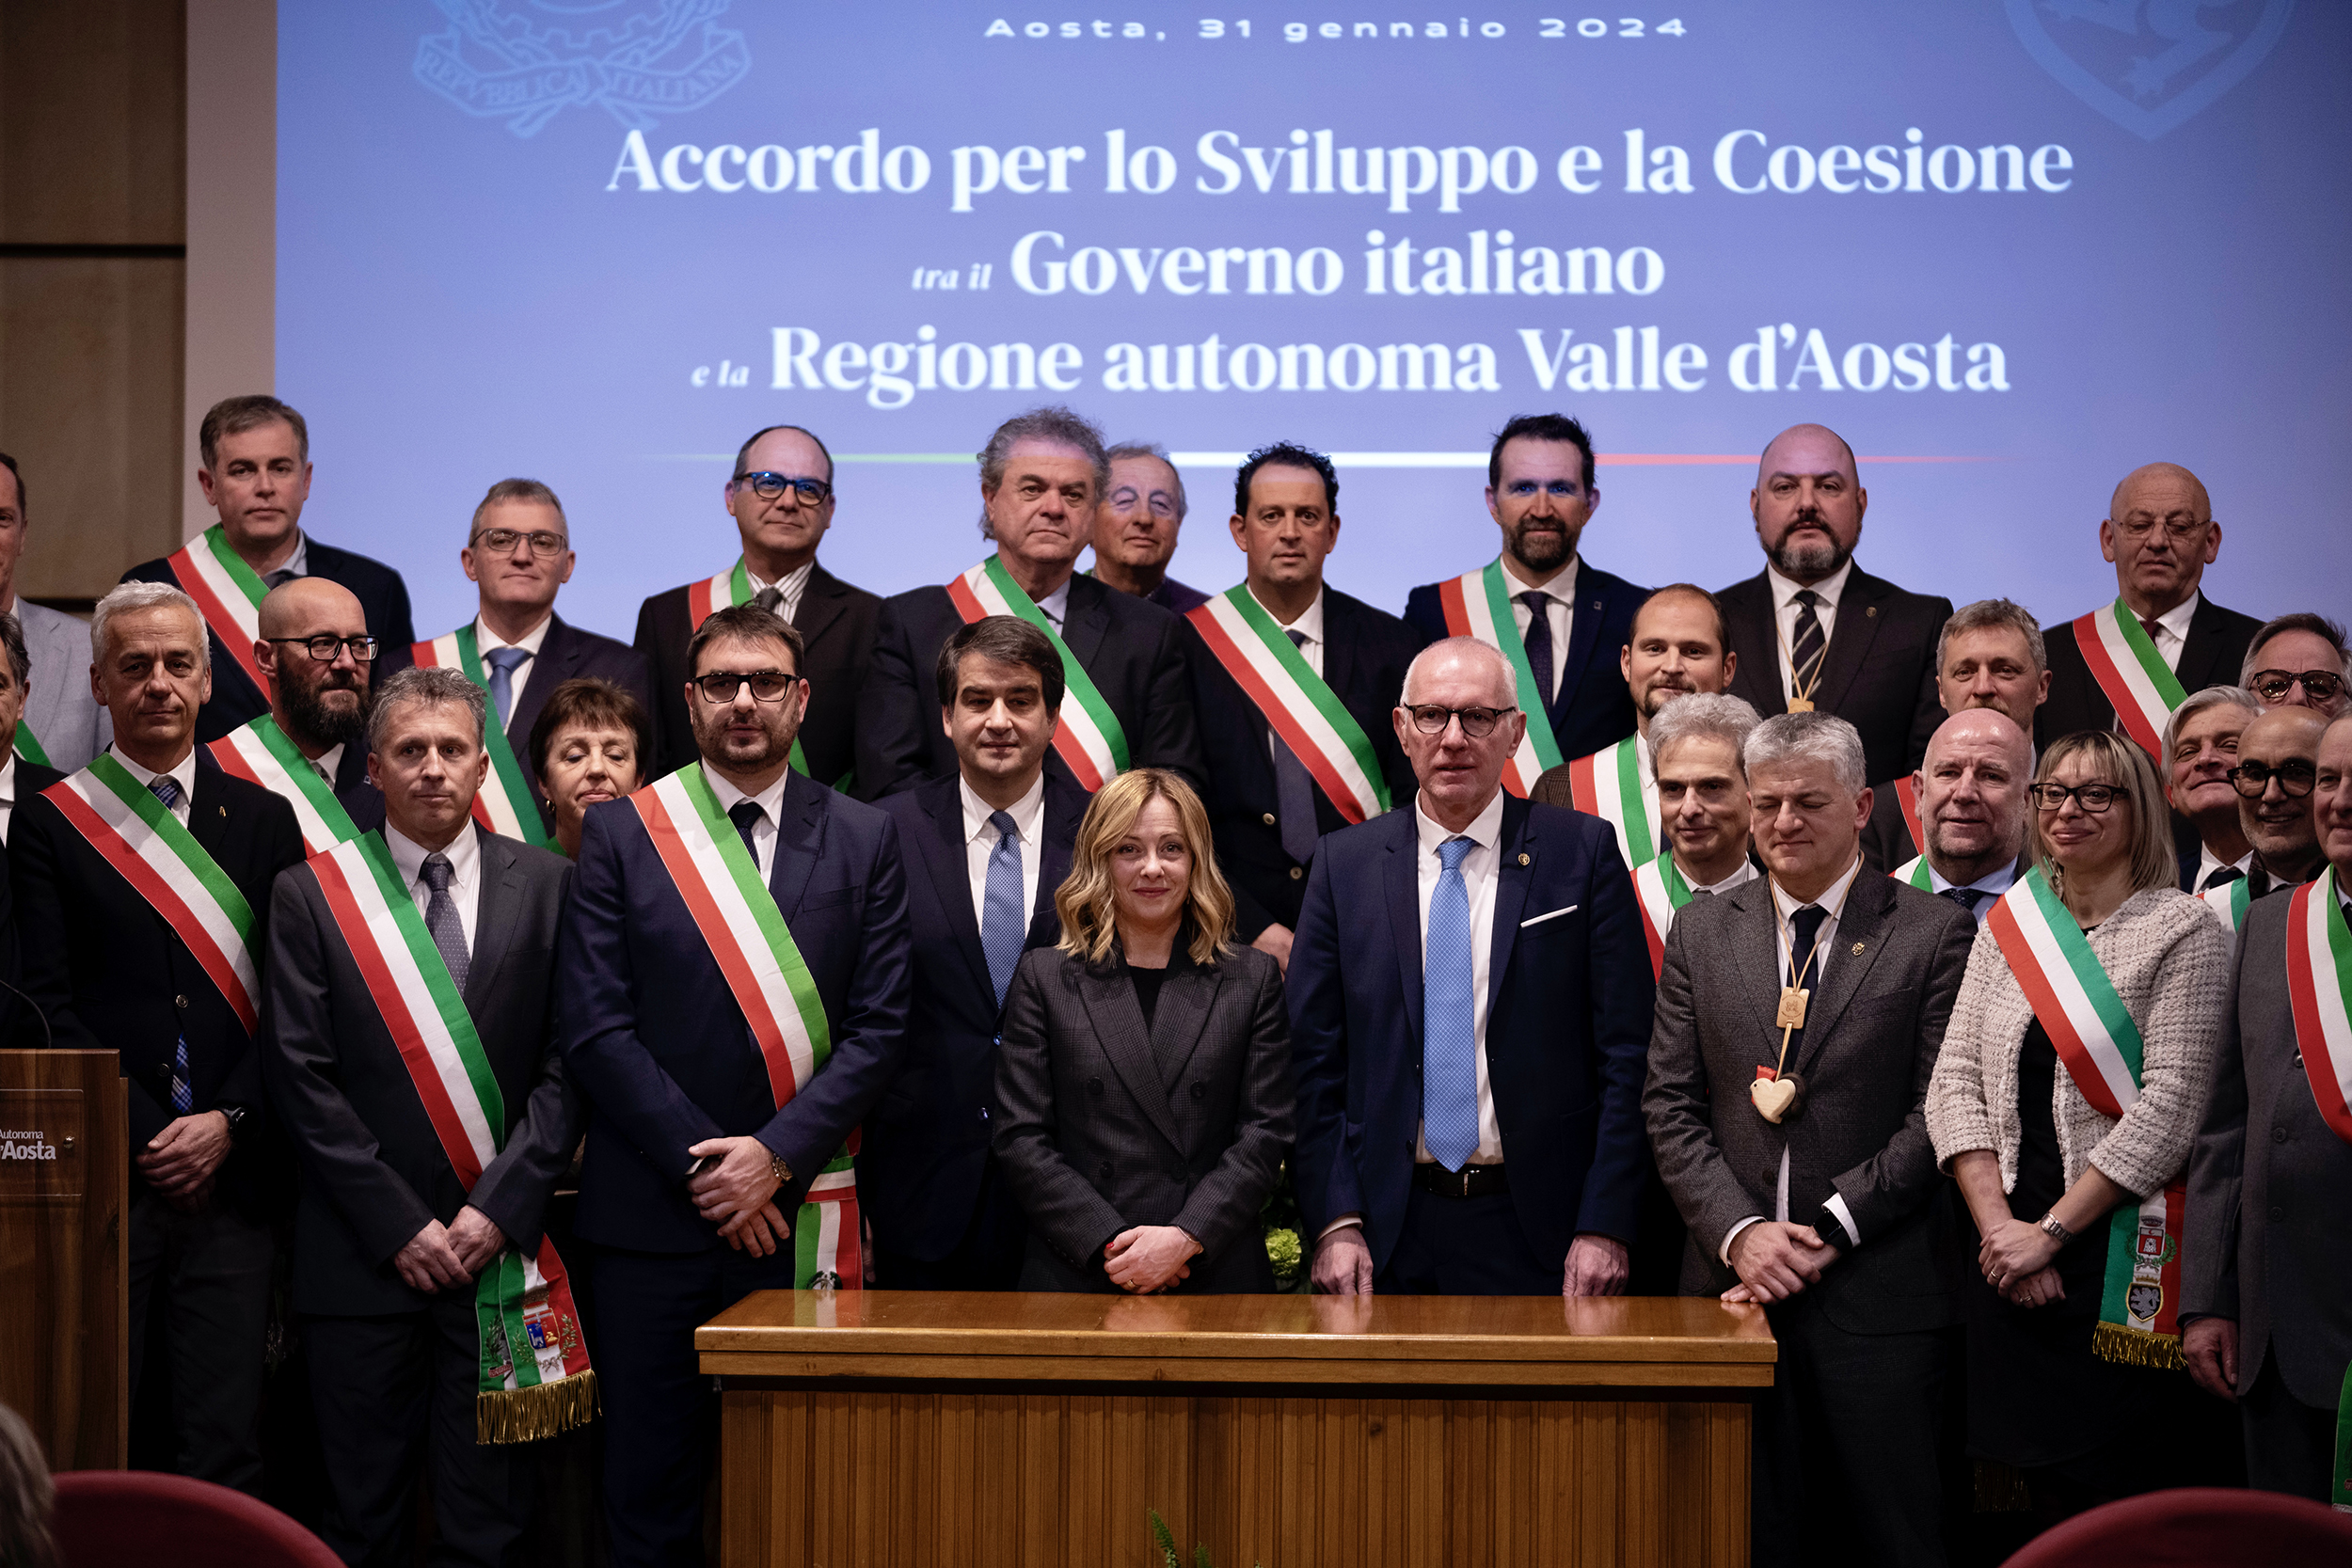 Fonte: Governo Italiano - Presidenza del Consiglio dei Ministri - Immagini messe a disposizione con licenza CC-BY-NC-SA 3.0 IT